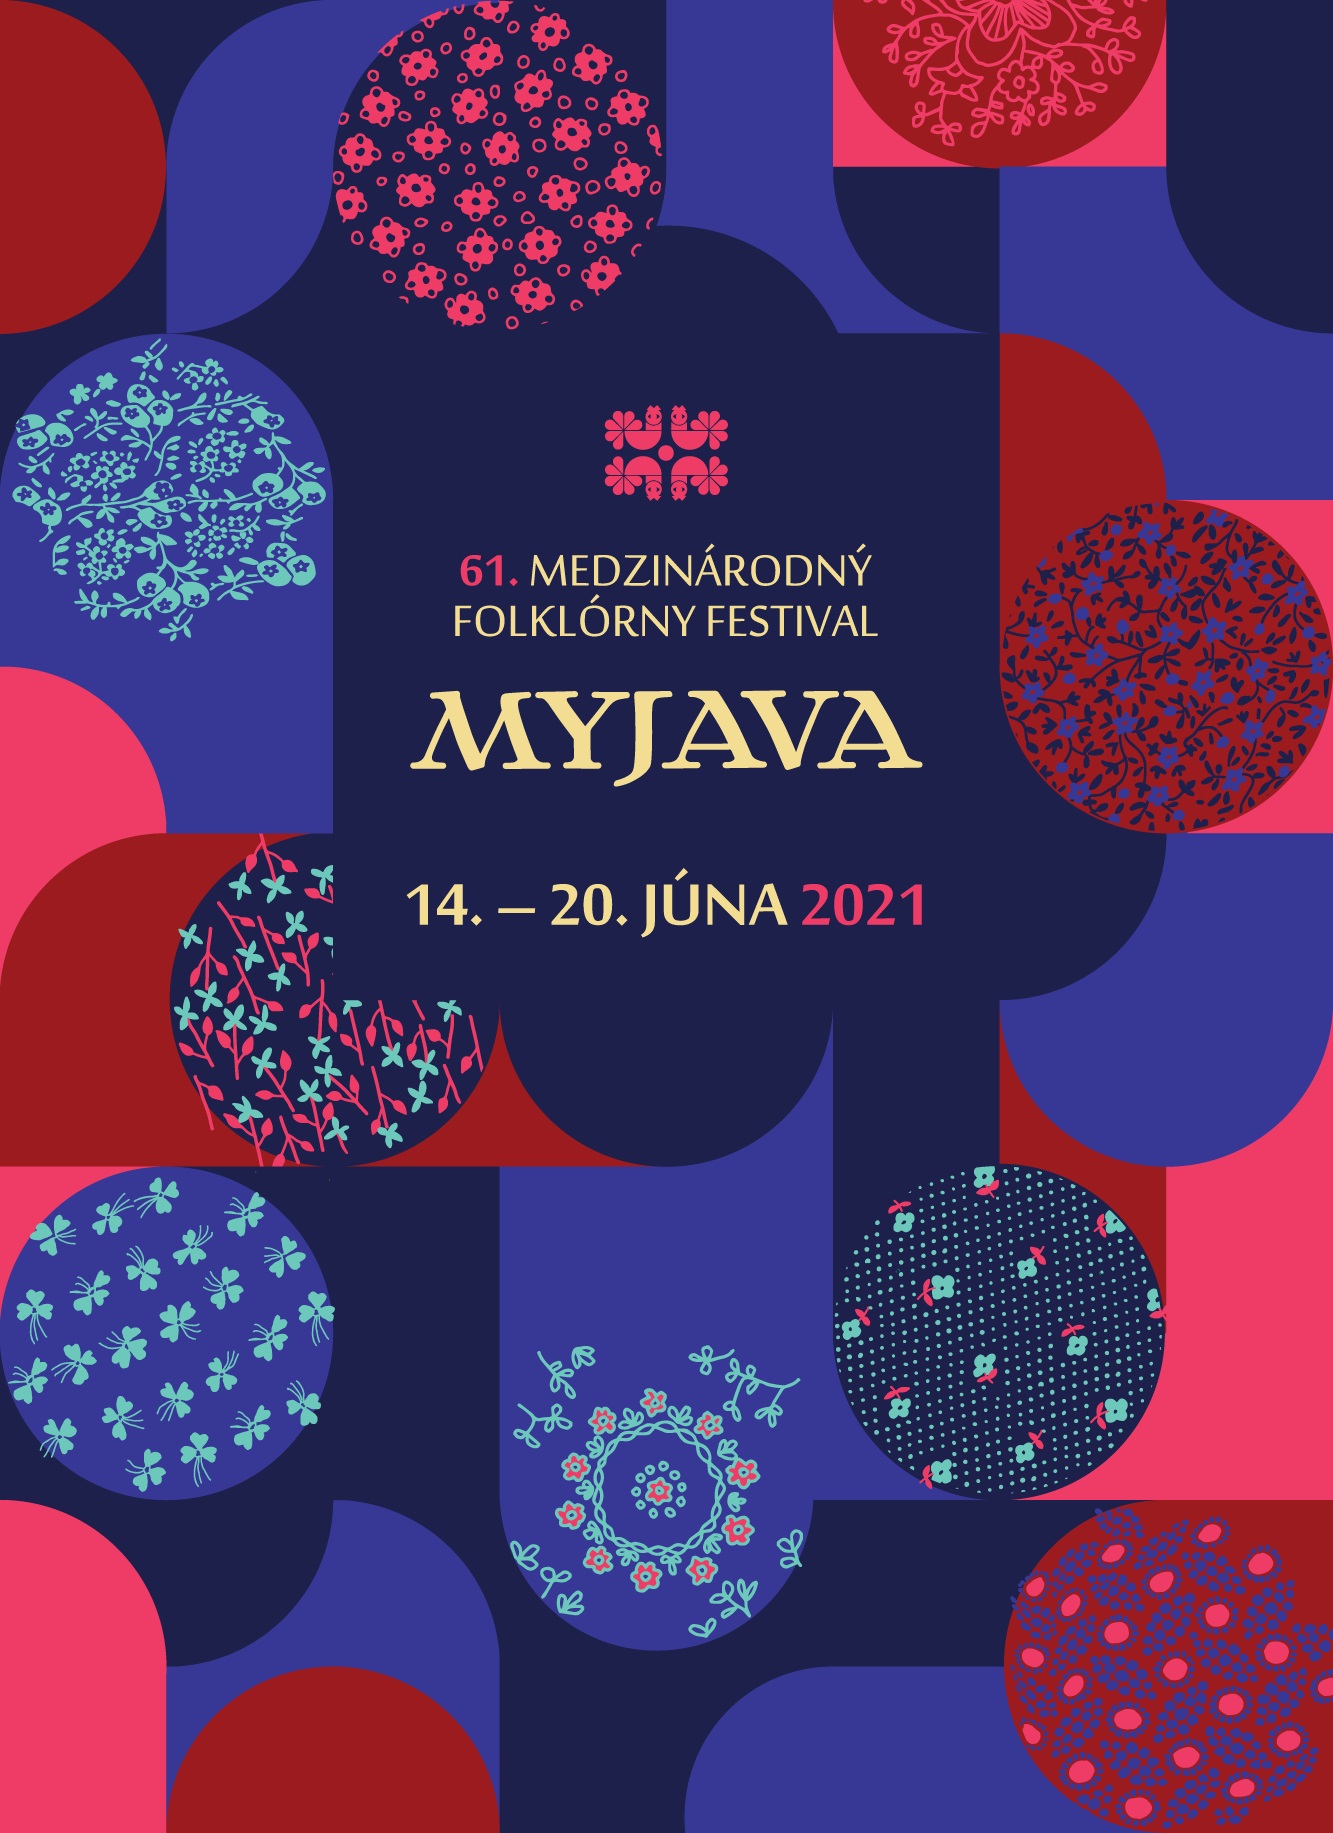 61. Medzinárodný folklórny festival MYJAVA